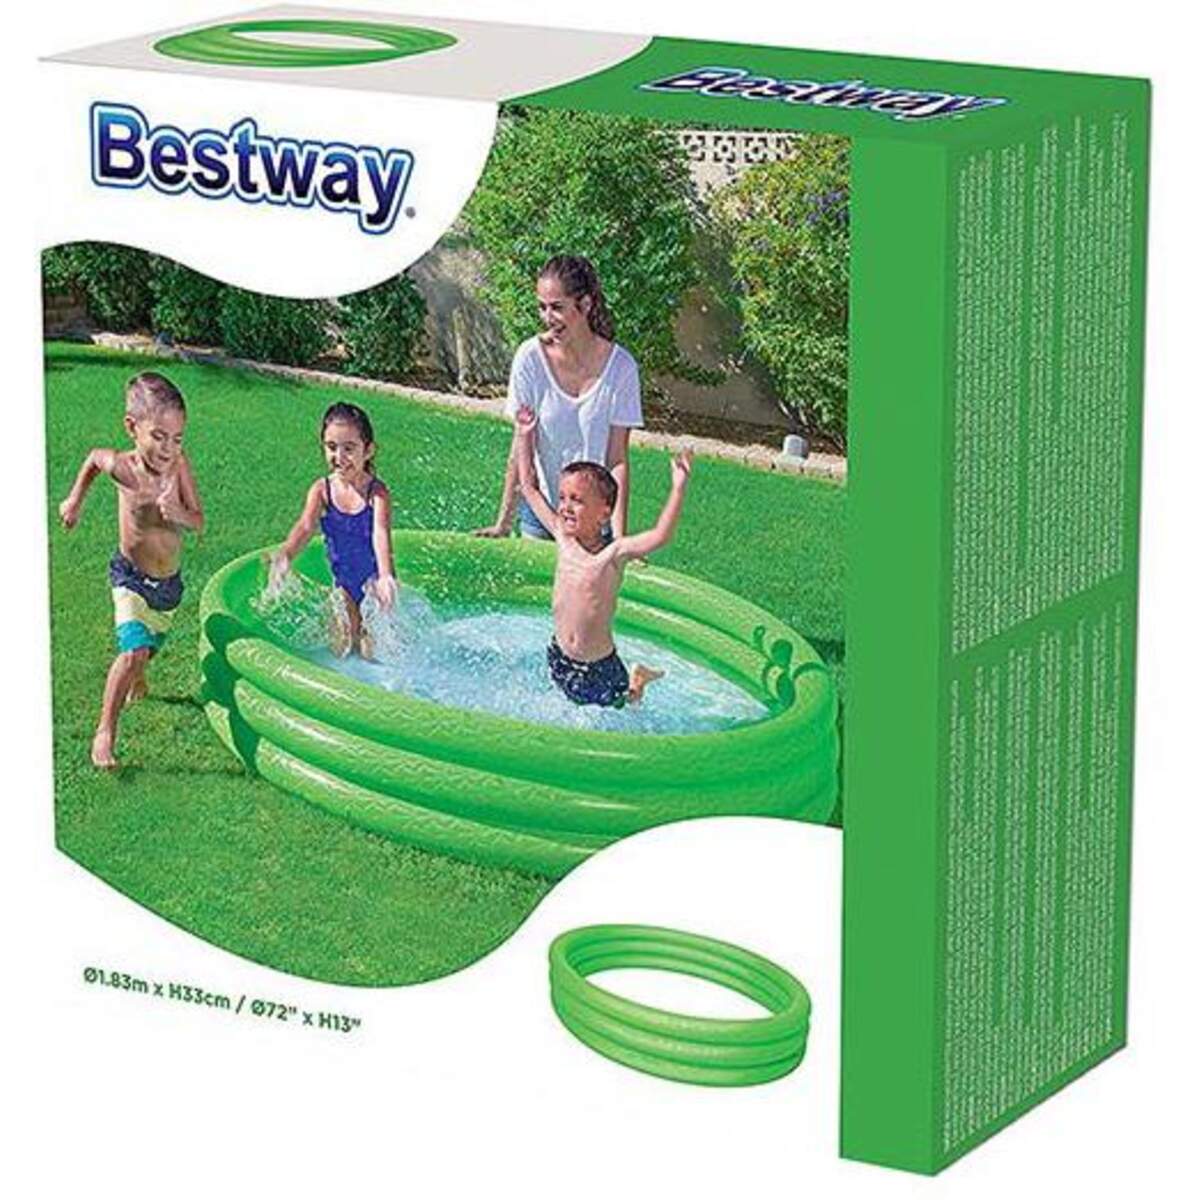 Bestway Pool 3-Ring Uni 180cm, farblich sortiert